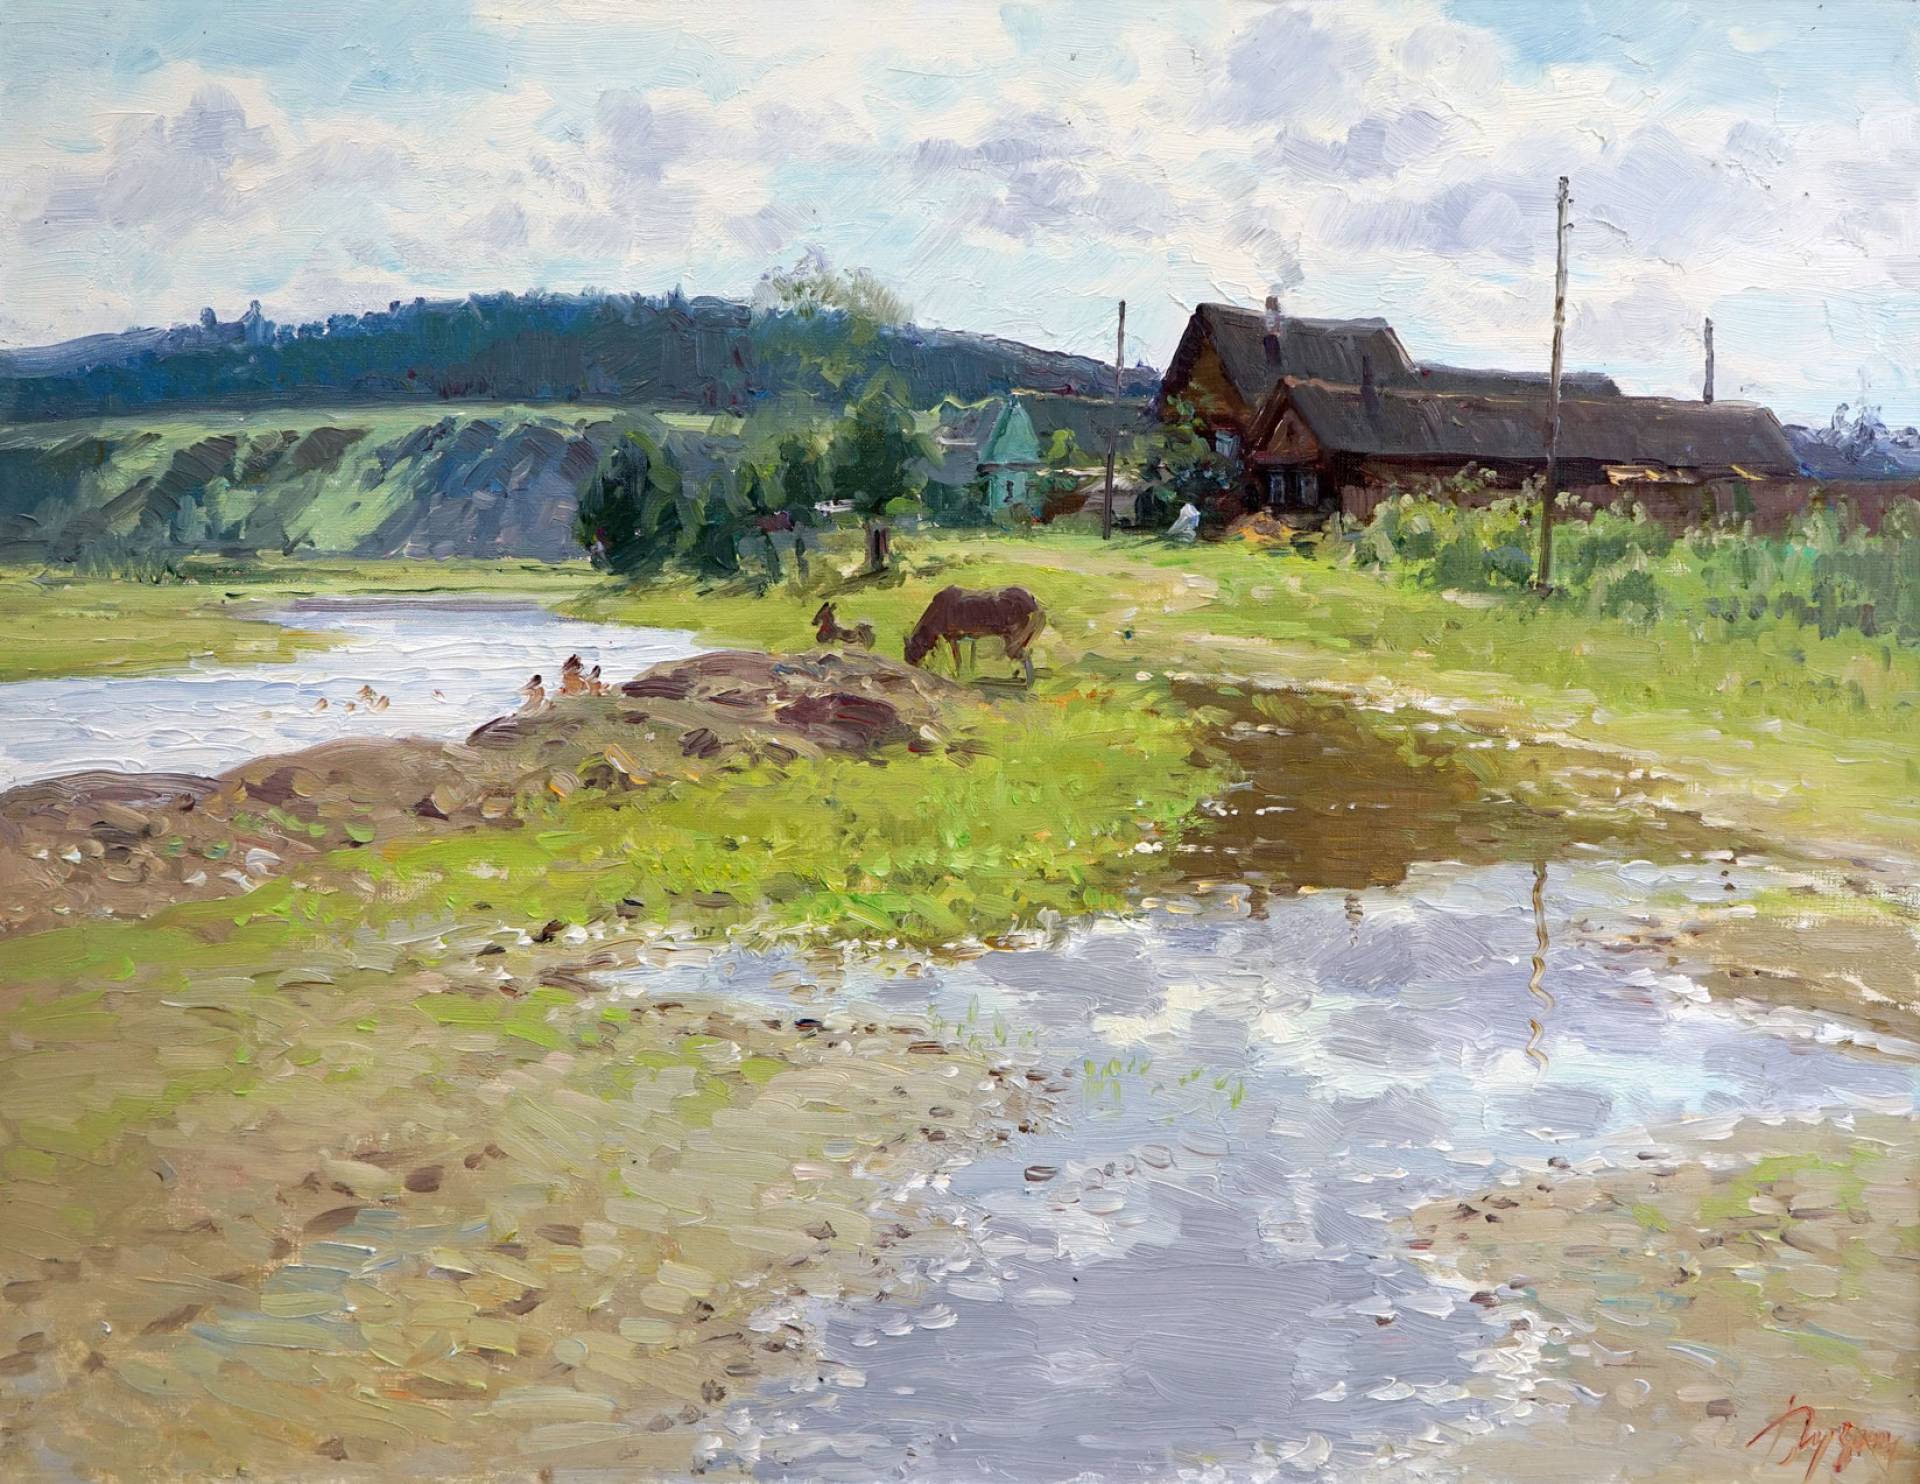 On the Serebryanka River - 1, Rustem Khuzin, Buy the painting Oil